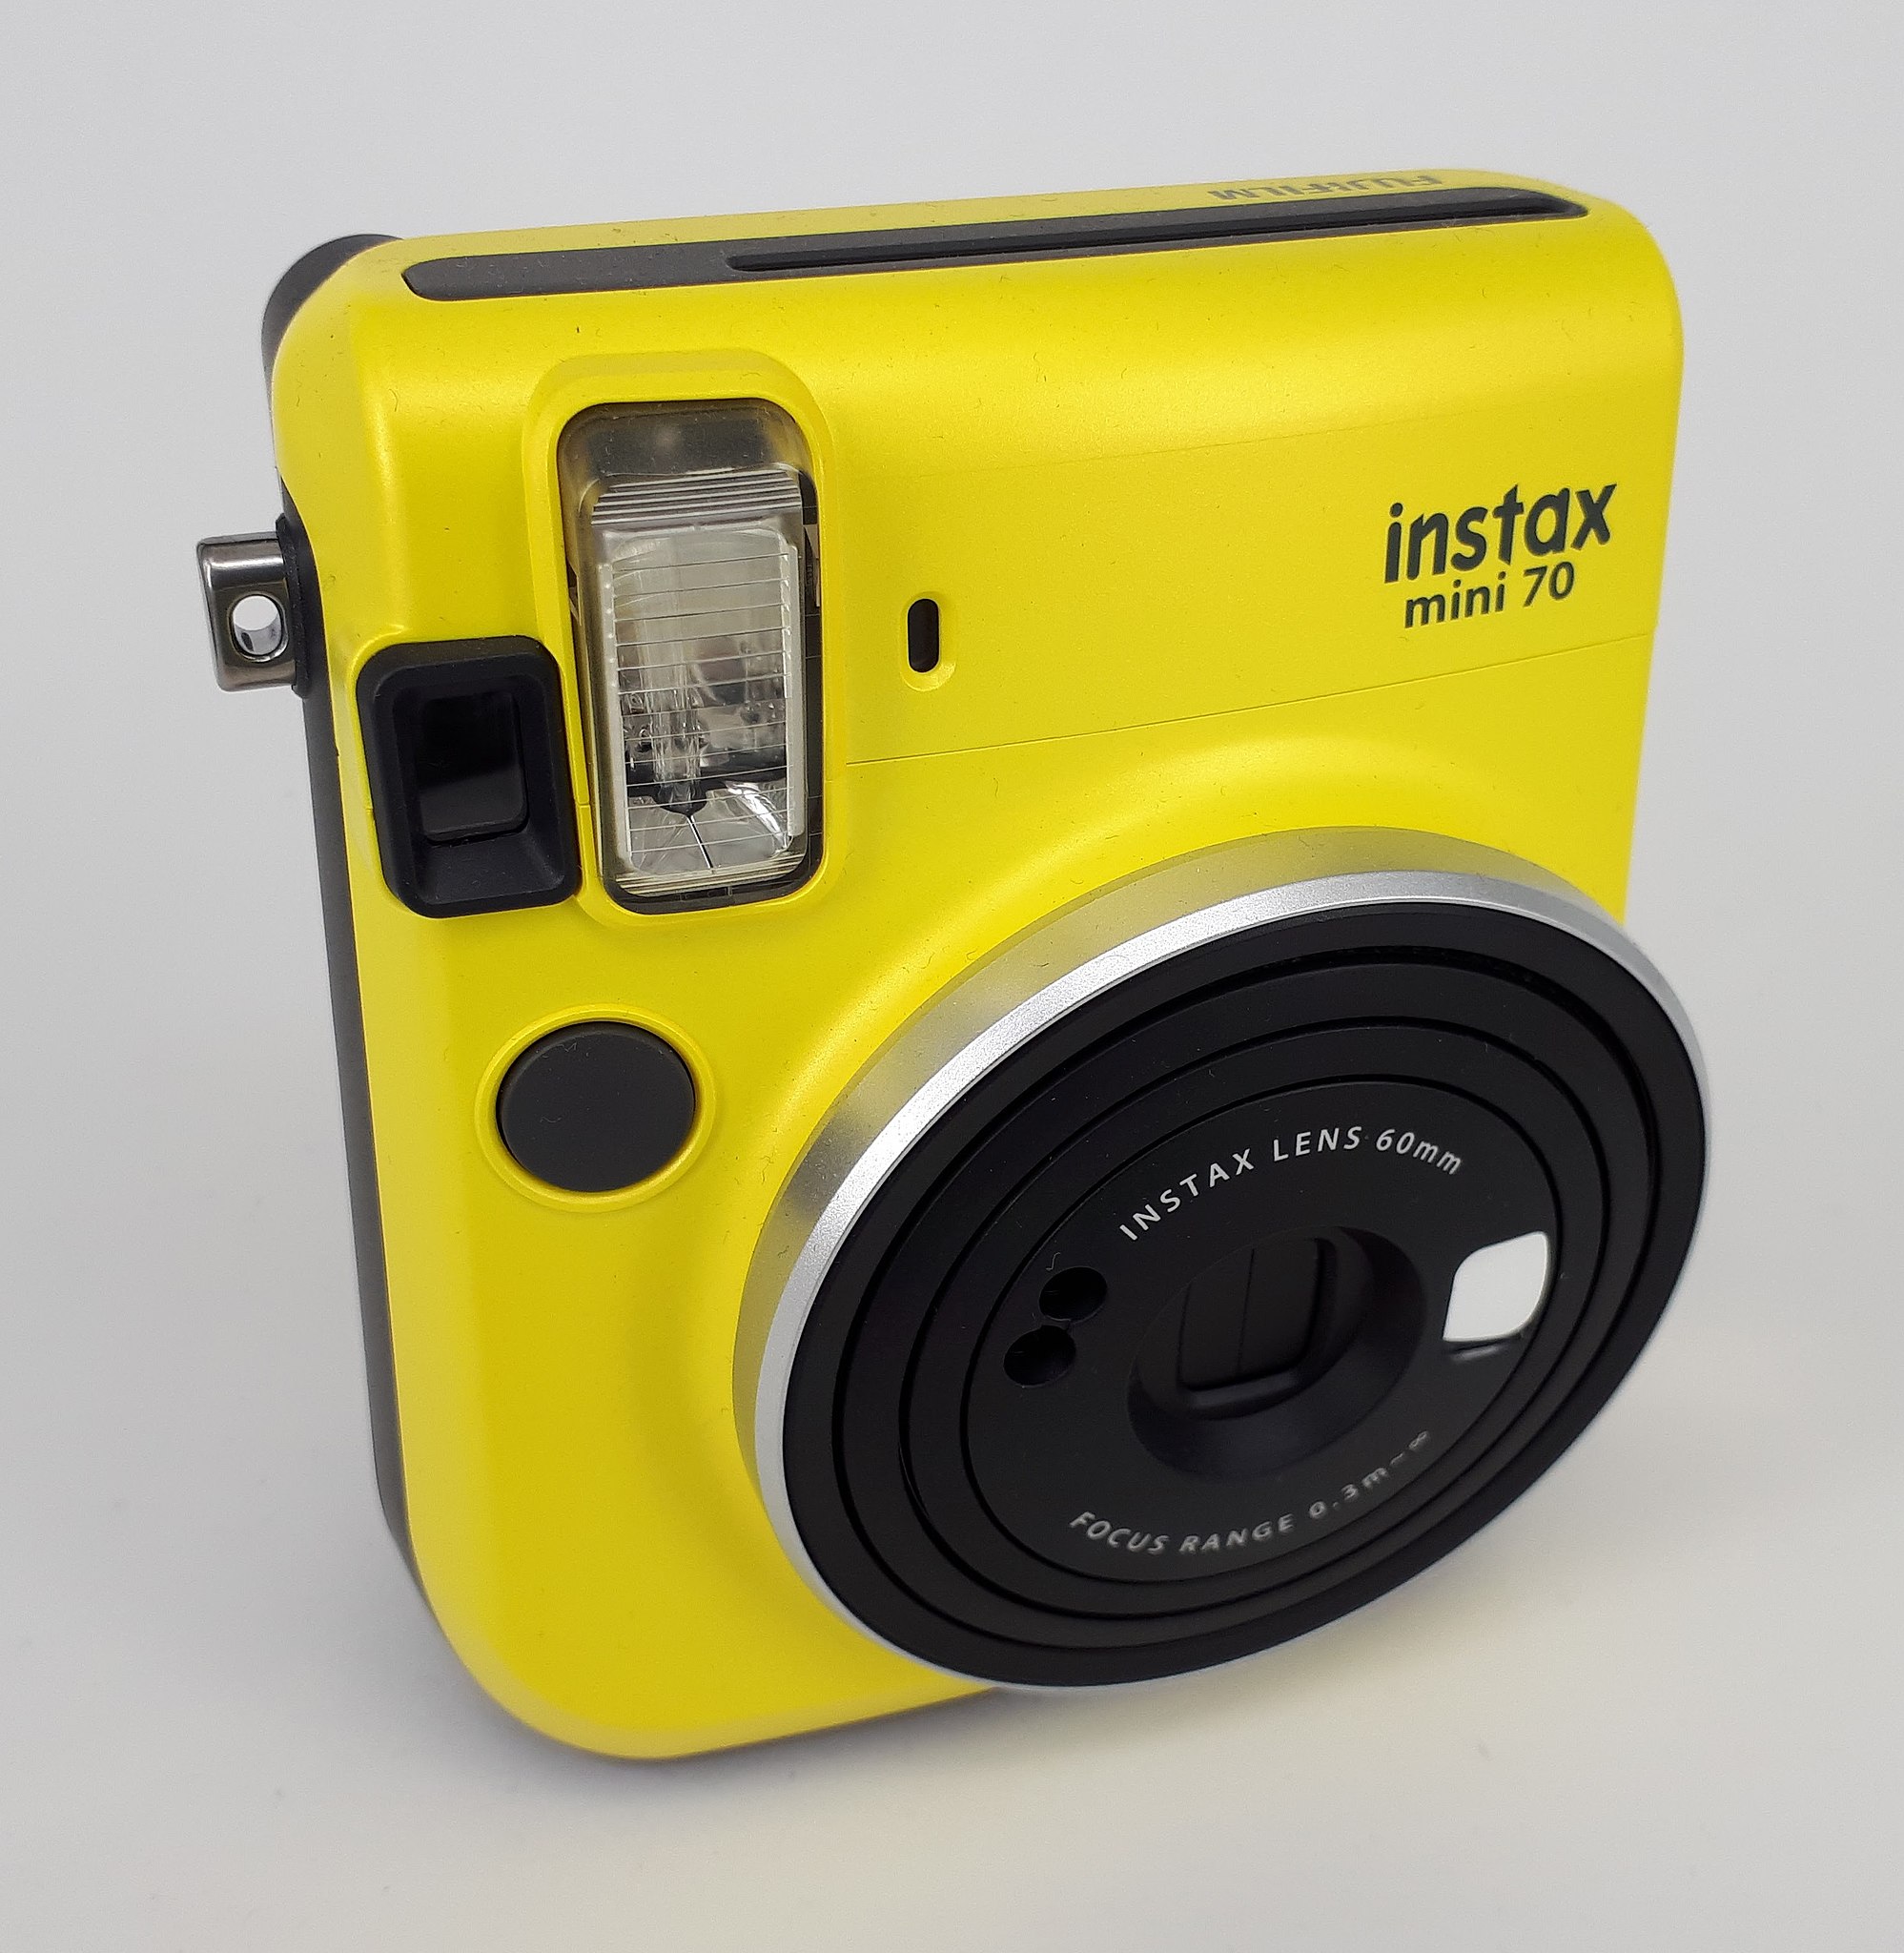 File:Fujifilm Instax mini 70 - yellow.jpg - Wikipedia